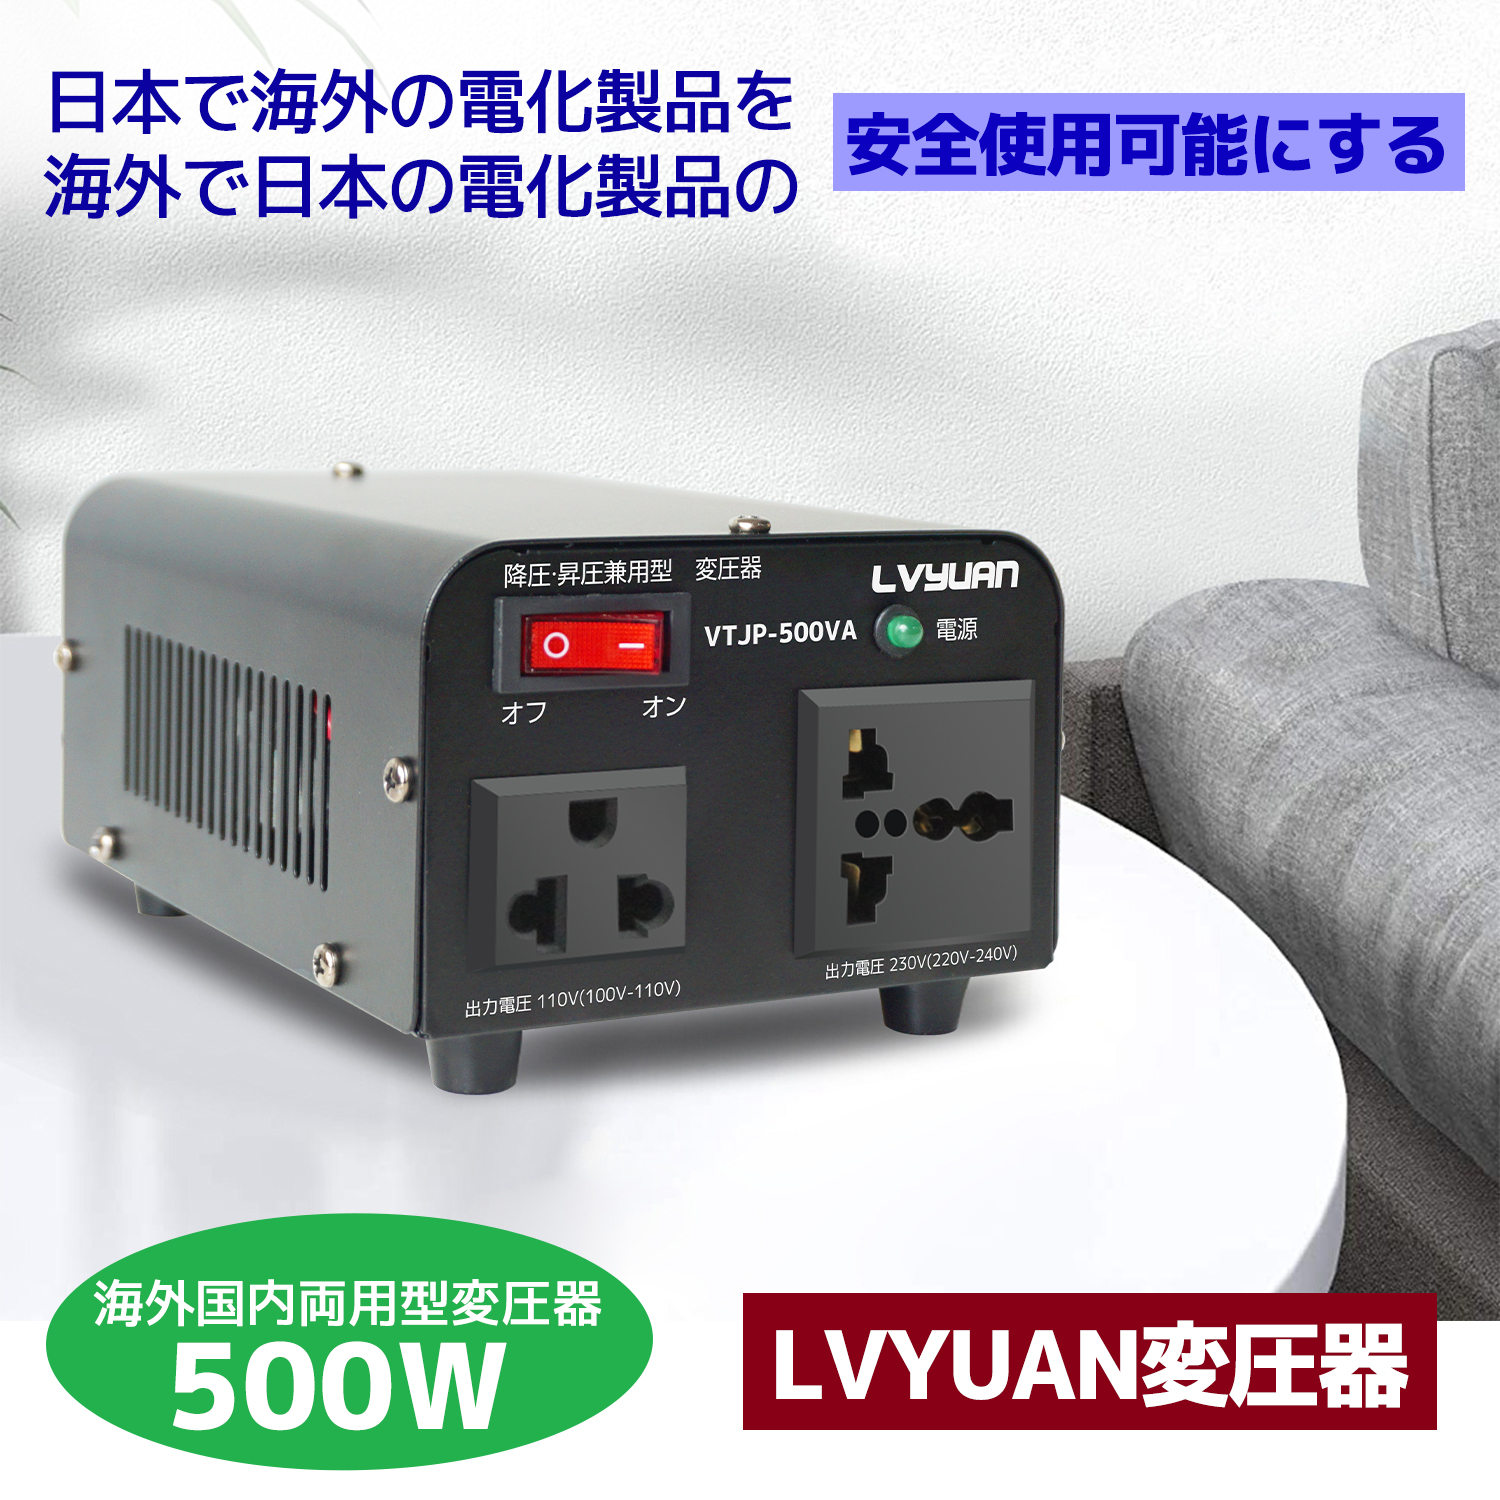 【1年保証】変圧器 500W 安定器 海外国内両用型変圧器 アップ